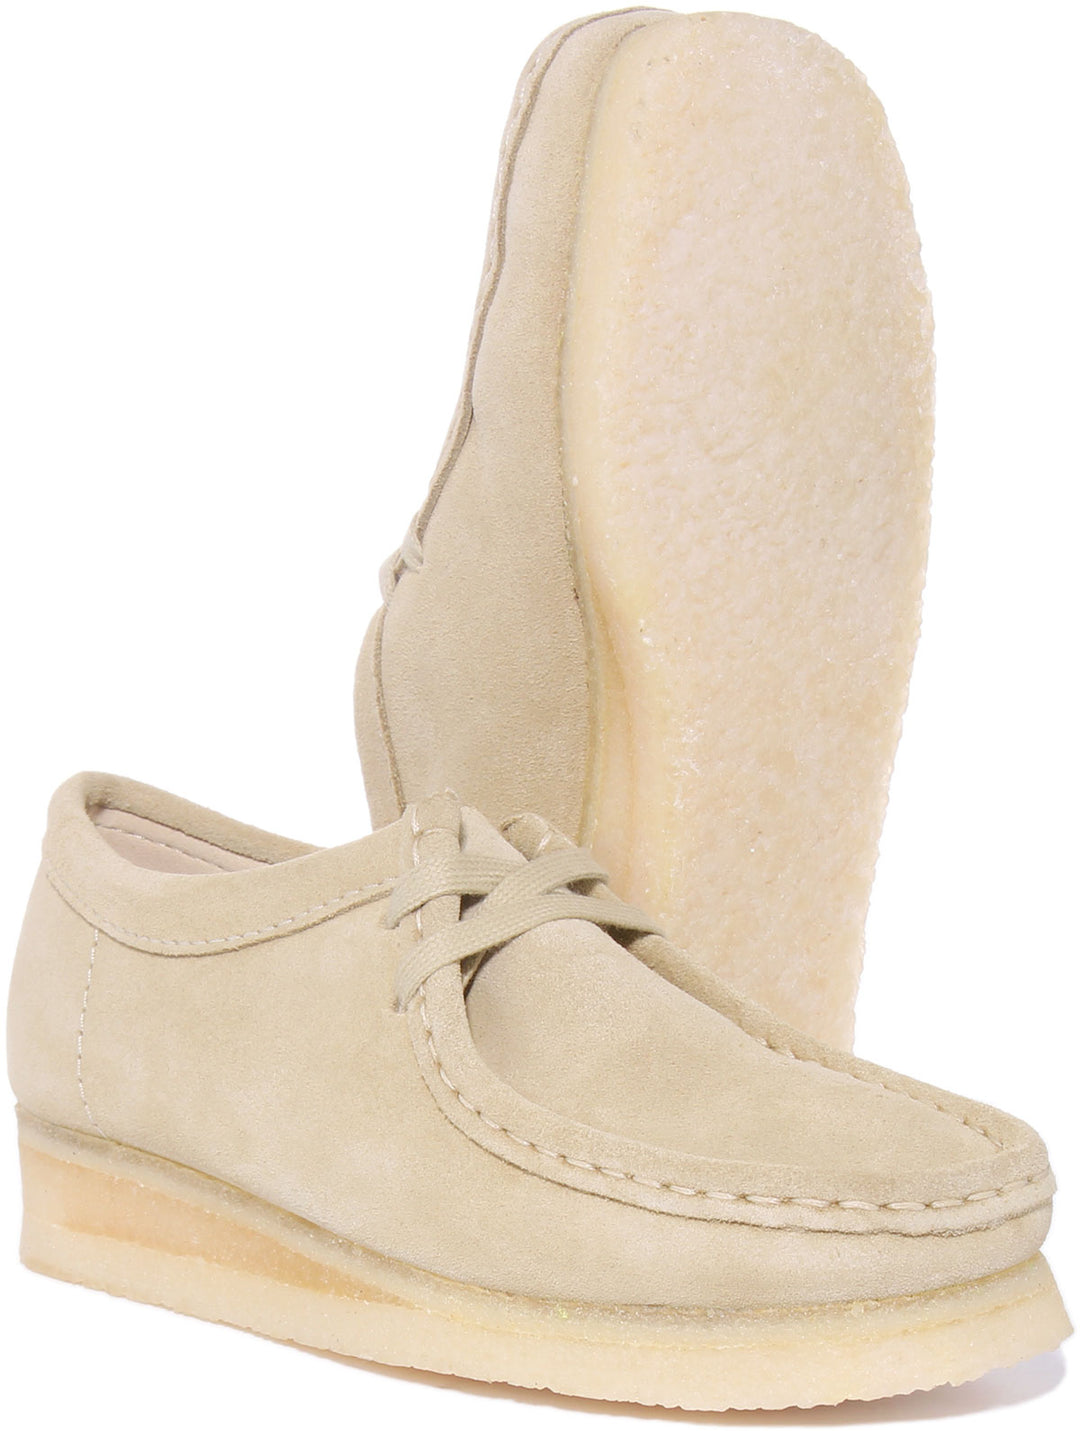 Clarks Originals Wallabee Chaussures en daim à lacets pour femmes en beige